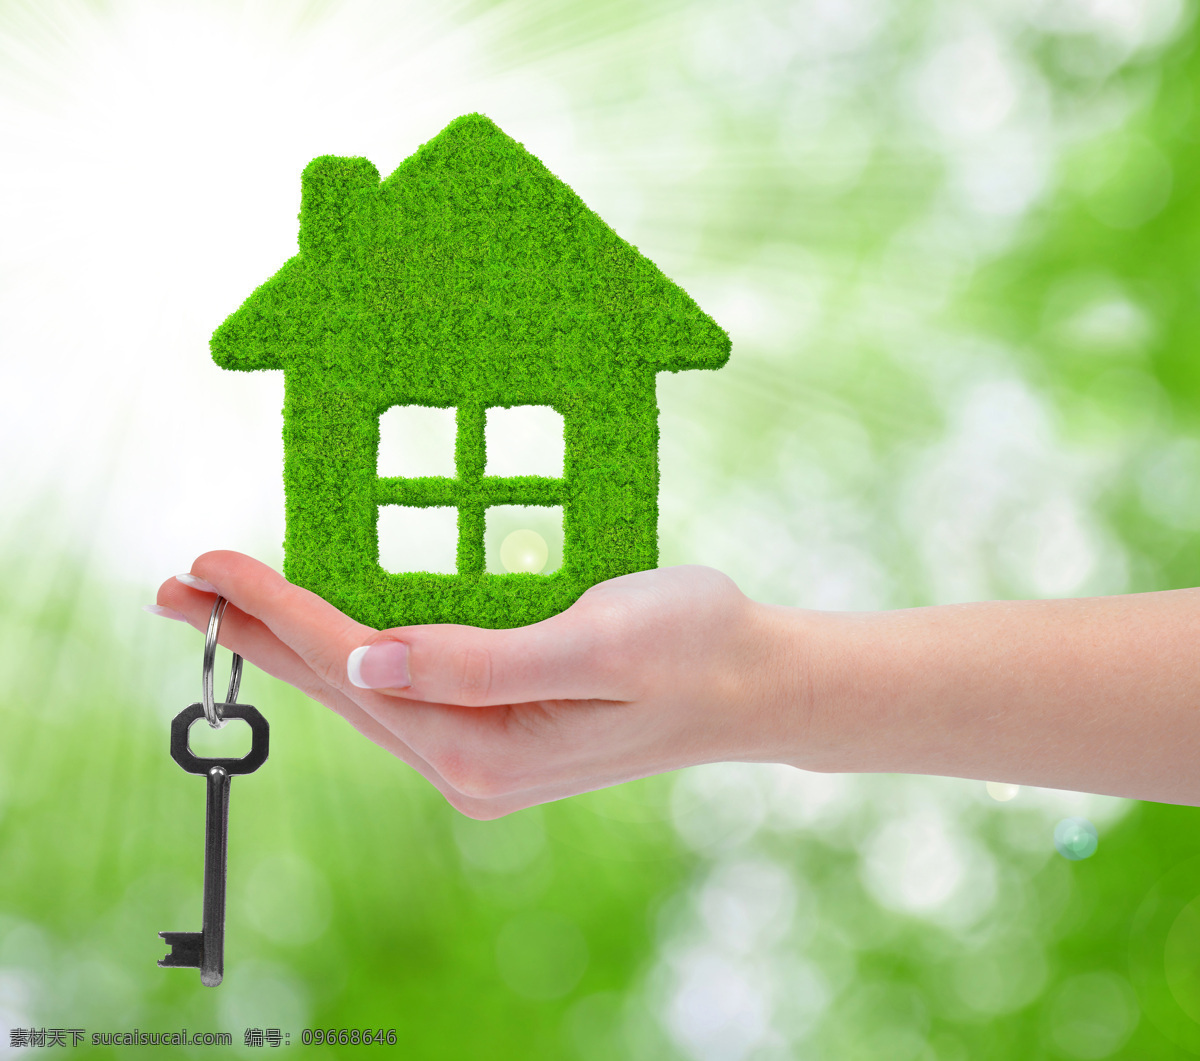 环保绿色房子 绿色 房子 钥匙 绿色人居 房地产 伸出手 手捧着 产权 环保材料 自然 清新 节约 环保设计 生活百科 生活素材